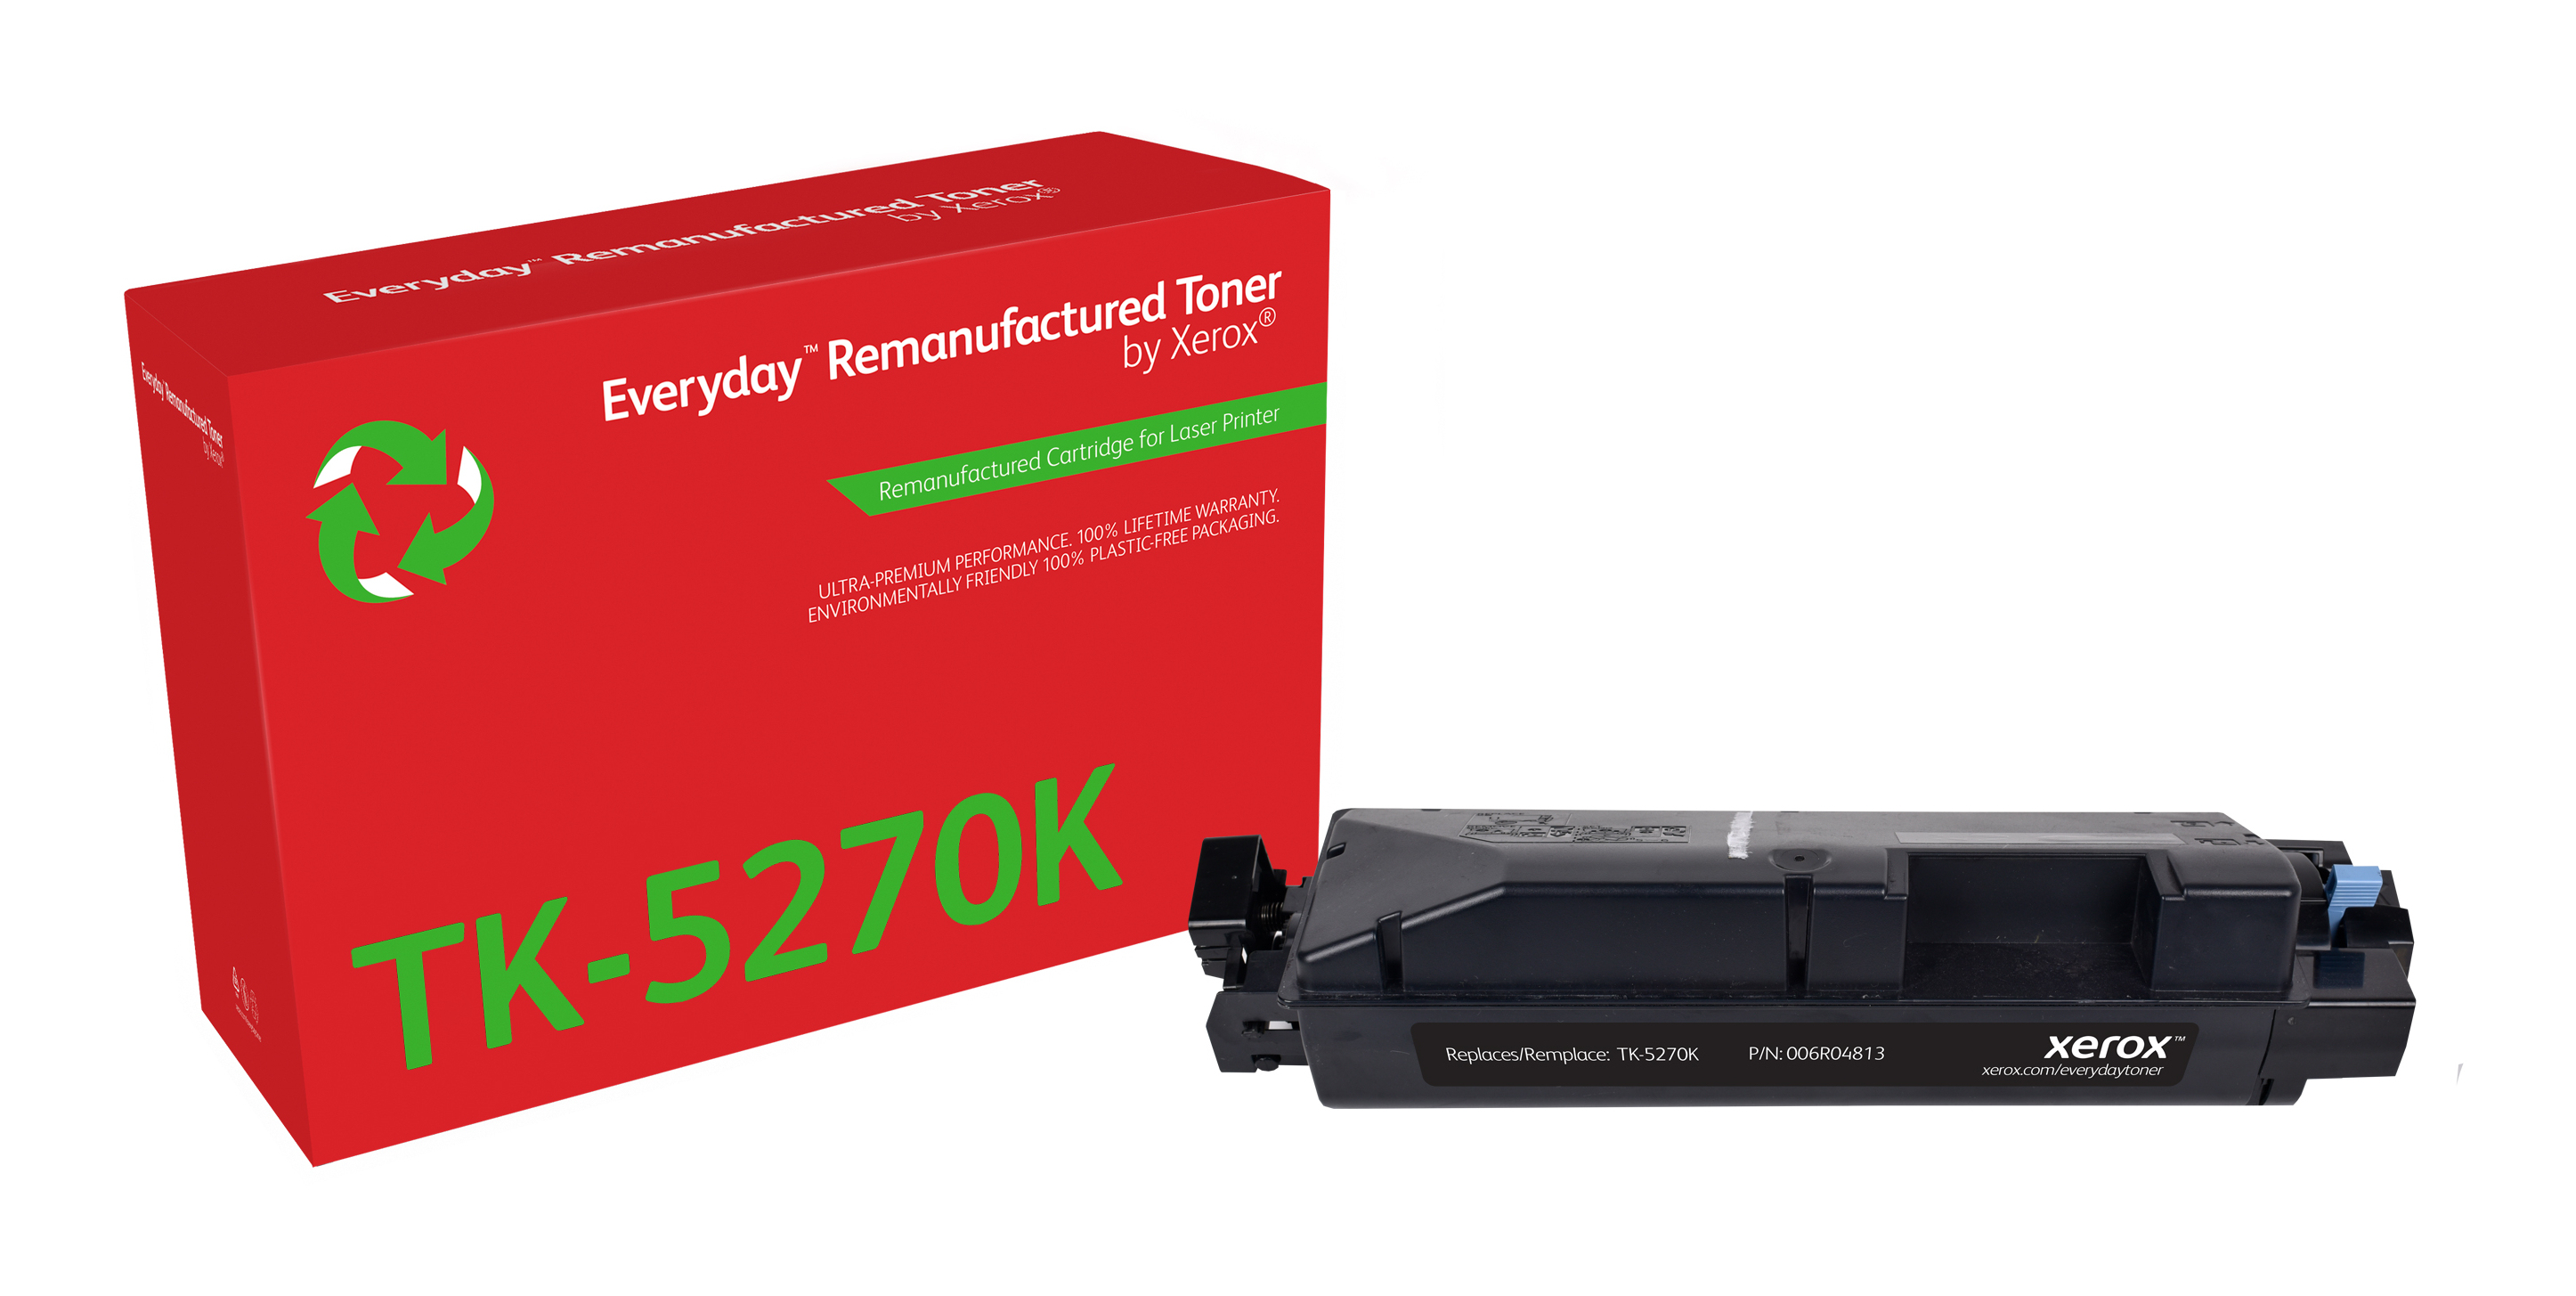 Remanufacturado Everyday Tner Everyday Negro remanufacturado de Xerox es compatible con Kyocera TK-5270K, Capacidad estndar